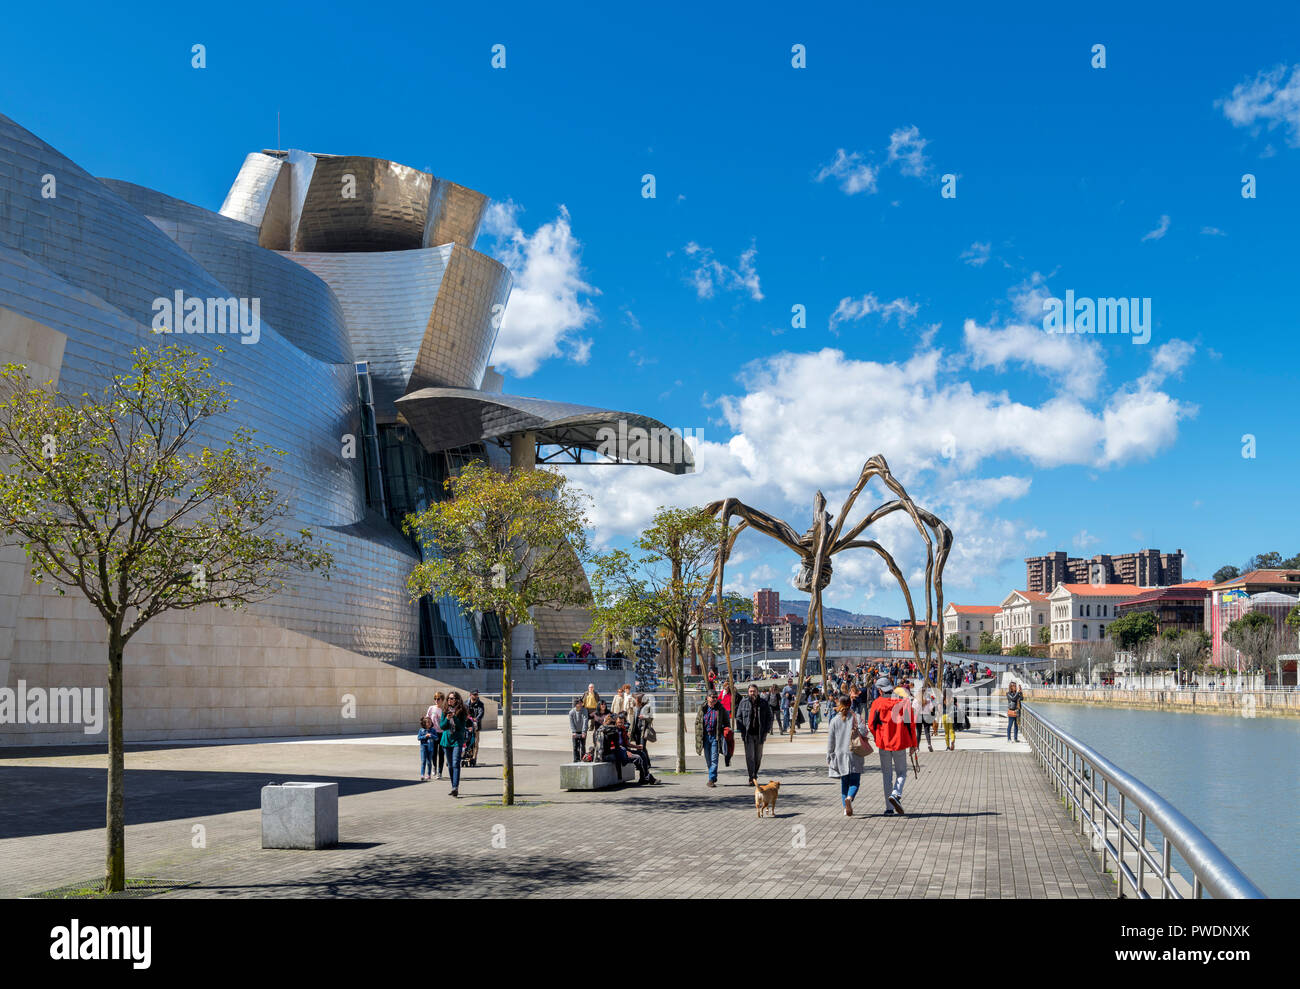 Guggenheim Bilbao. L'Araignée géante sculpture maman, de Louise Bourgeois, à l'extérieur du musée Guggenheim de Bilbao, Pays Basque, Espagne Banque D'Images